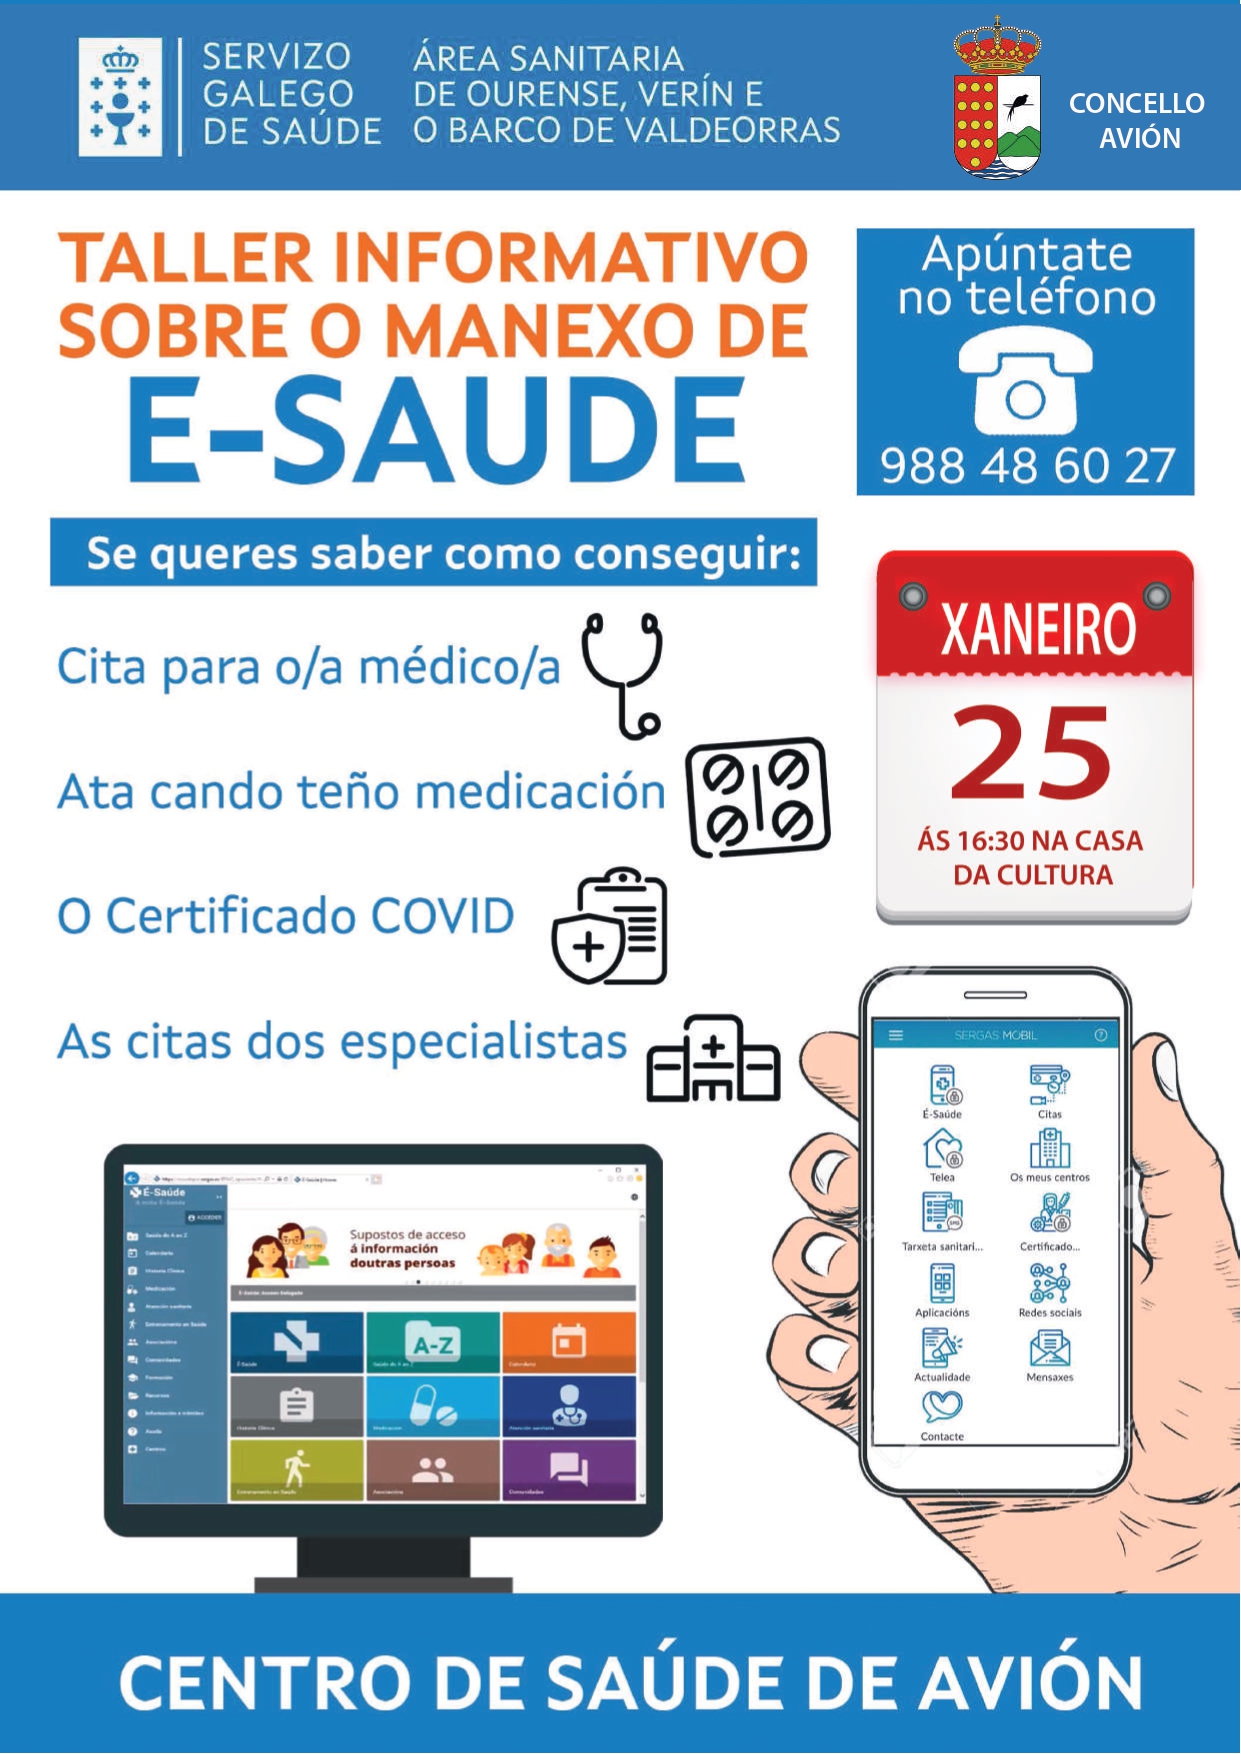 Taller Informativo sobre Manexo de E-saúde